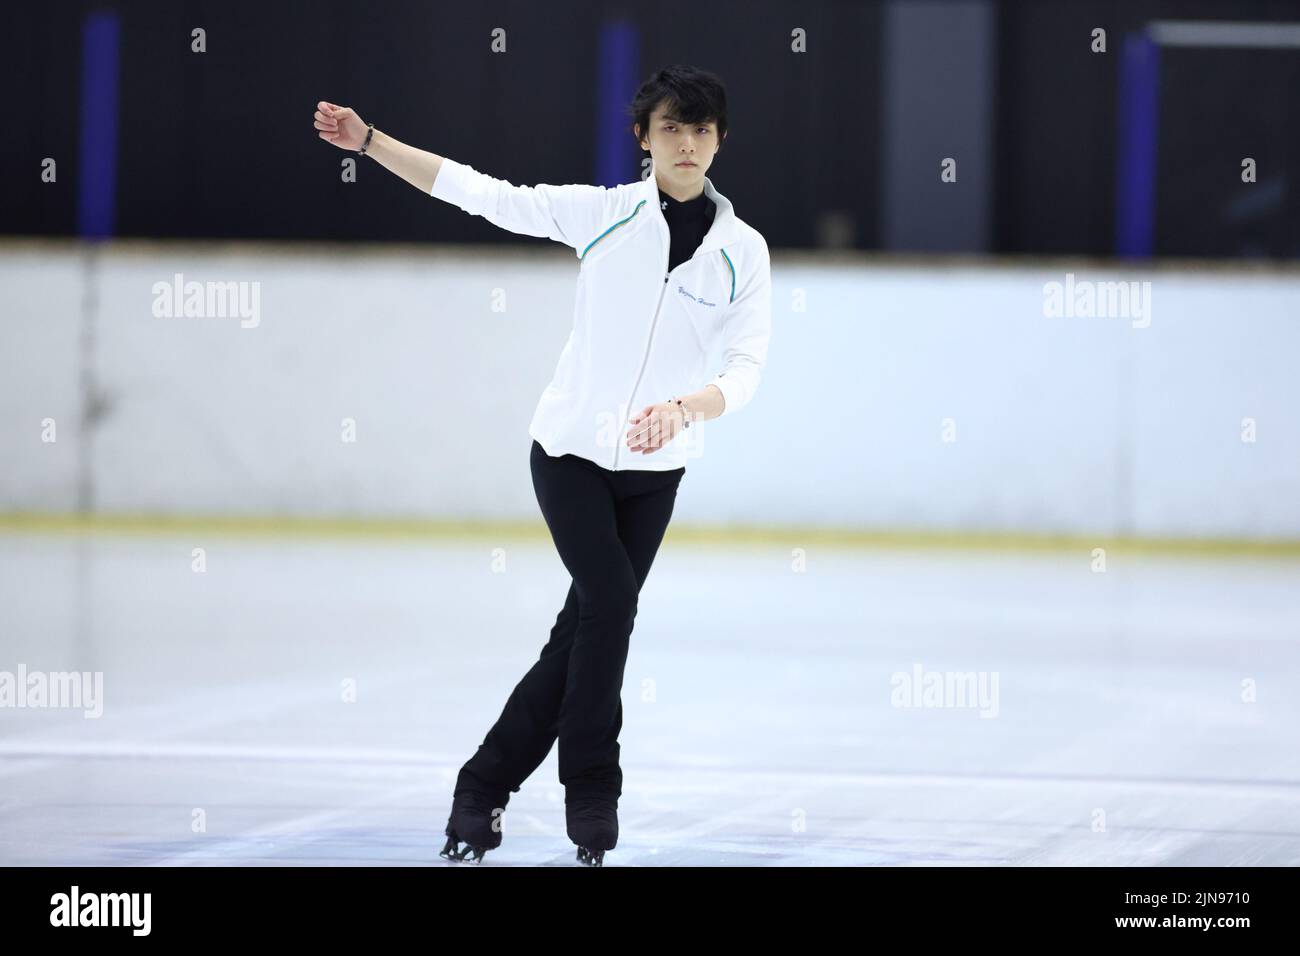 Yuzuru Hanyu, 10 DE AGOSTO de 2022 - Patinaje artístico: El patinador artístico japonés Yuzuru Hanyu actúa durante la sesión de formación abierta titulada 'SharePractice' en la pista de hielo de Sendai en Miyagi, Japón. (Foto de Naoki Nishimura/AFLO SPORT) Foto de stock